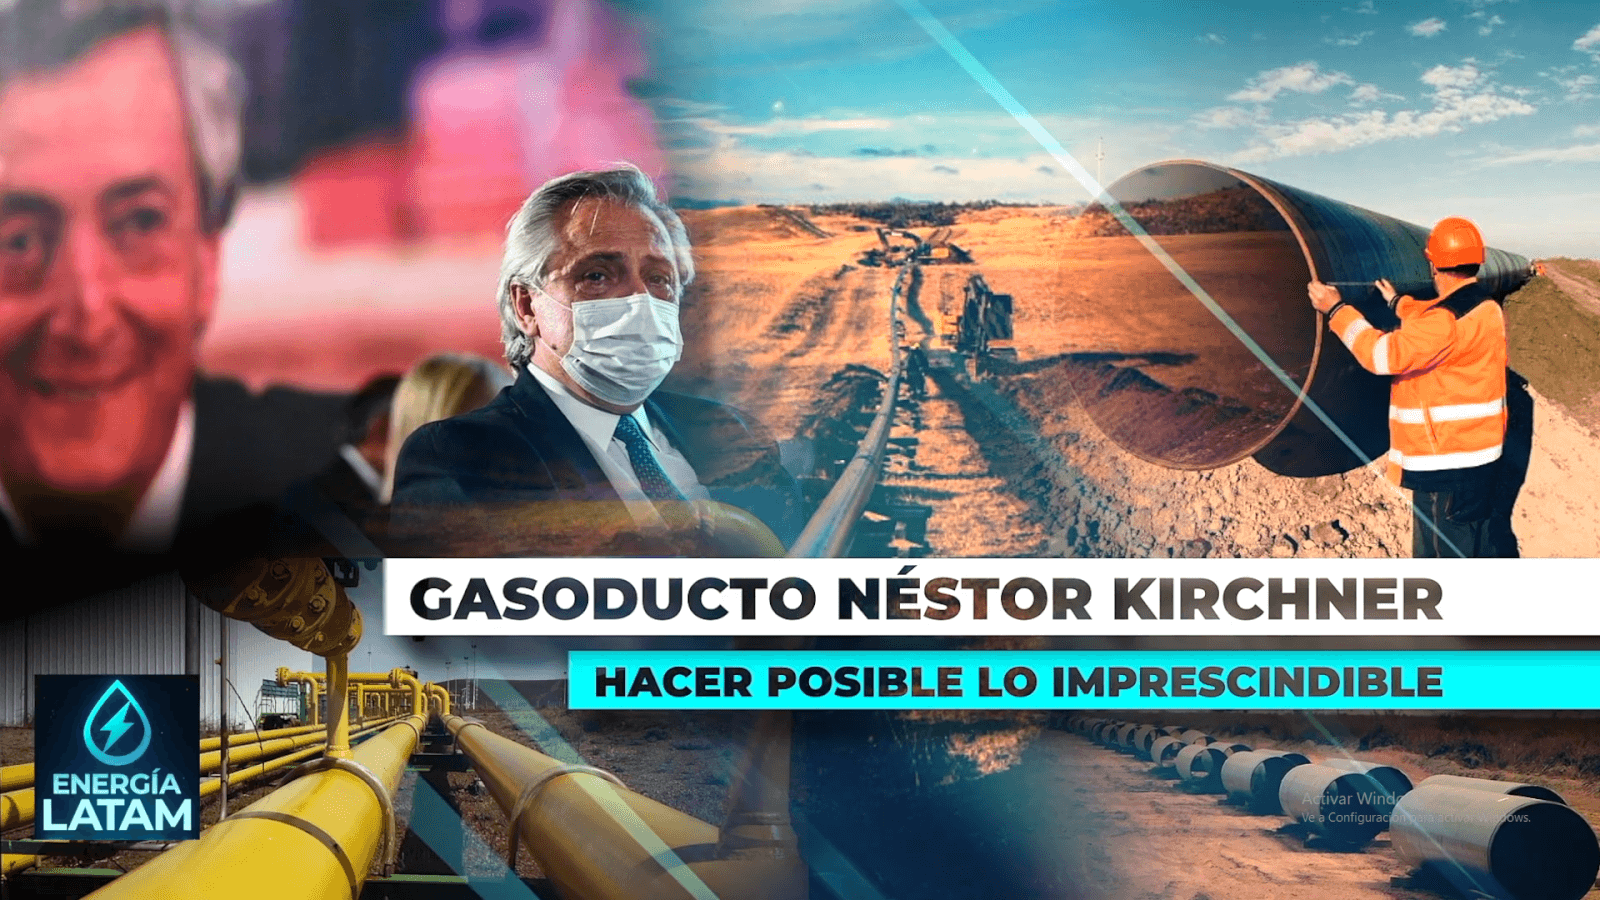 EL GASODUCTO NÉSTOR KIRCHNER